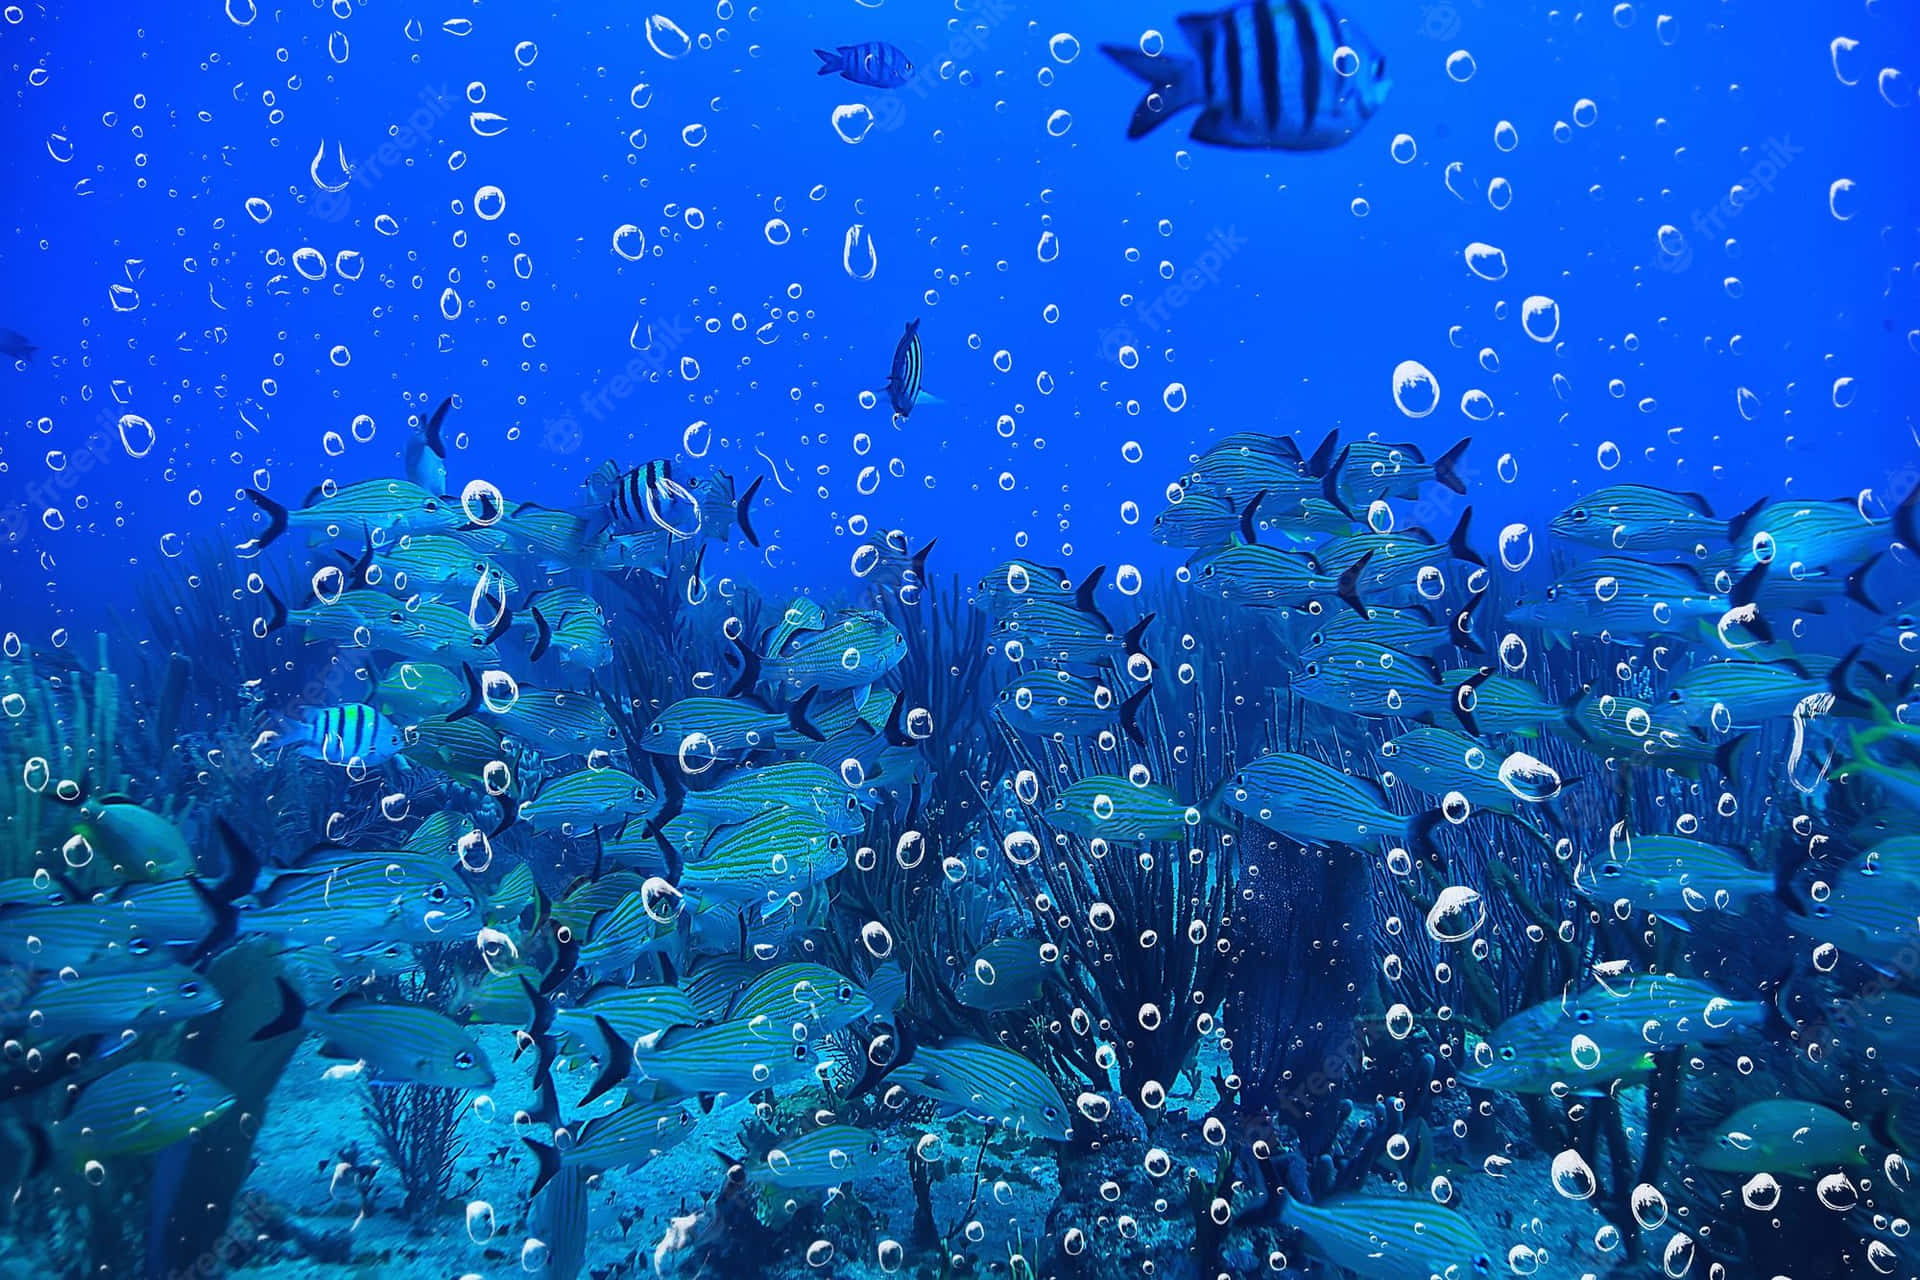 En fredelig udsigt til et undervandslandskab. Wallpaper